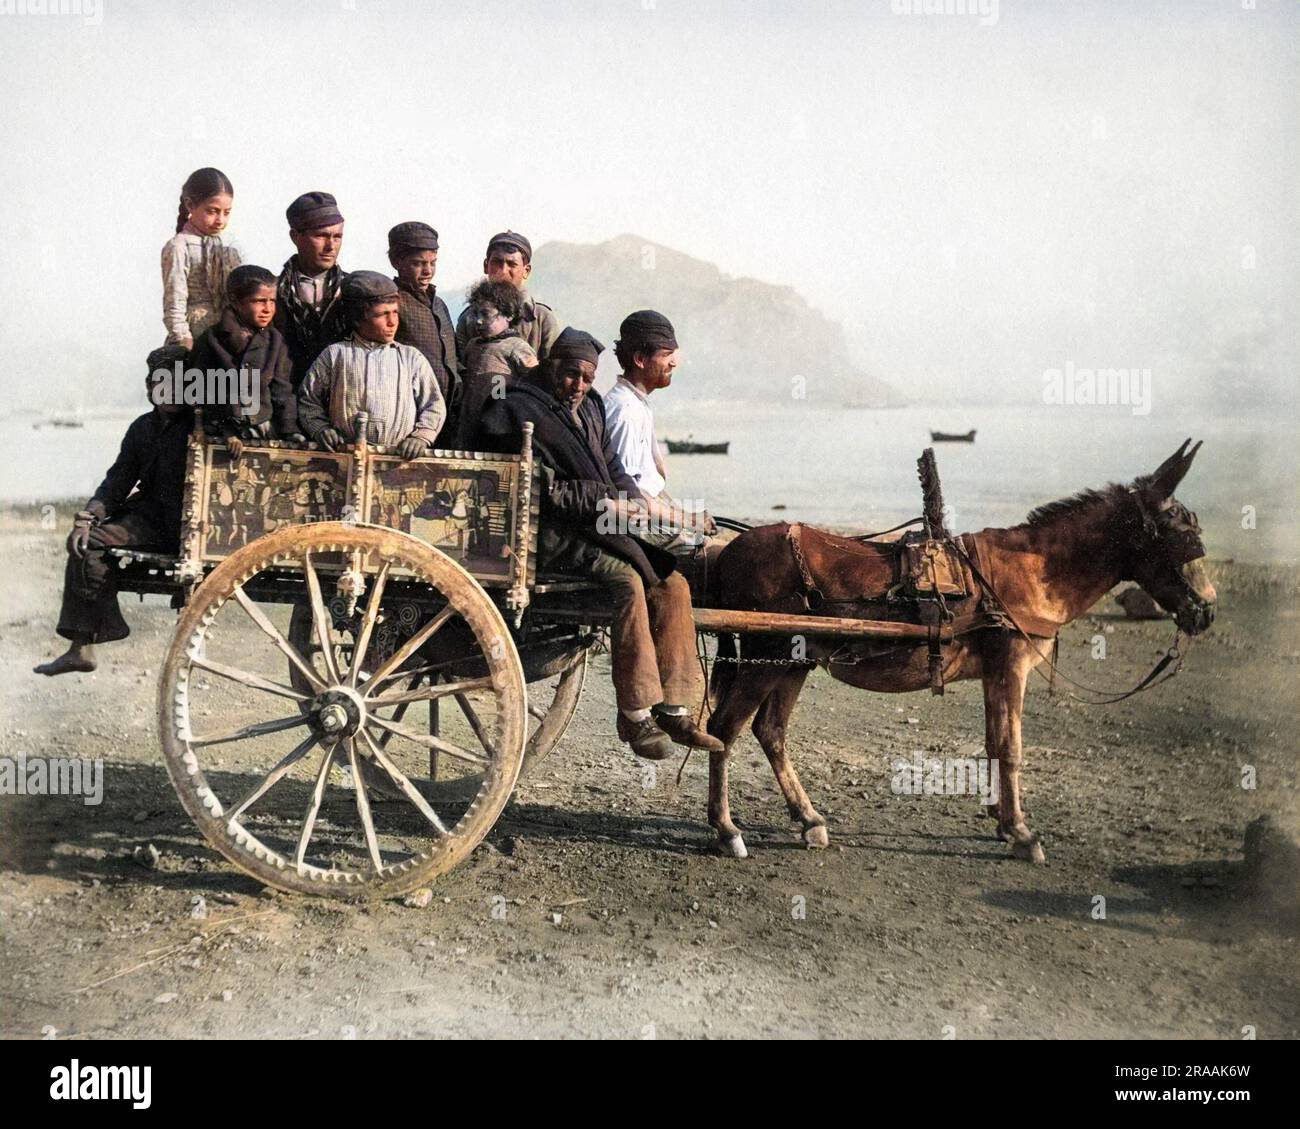 Leute auf einem dekorierten Eselskart, Sizilien, Italien. Datum: Ende des 19. Jahrhunderts Stockfoto